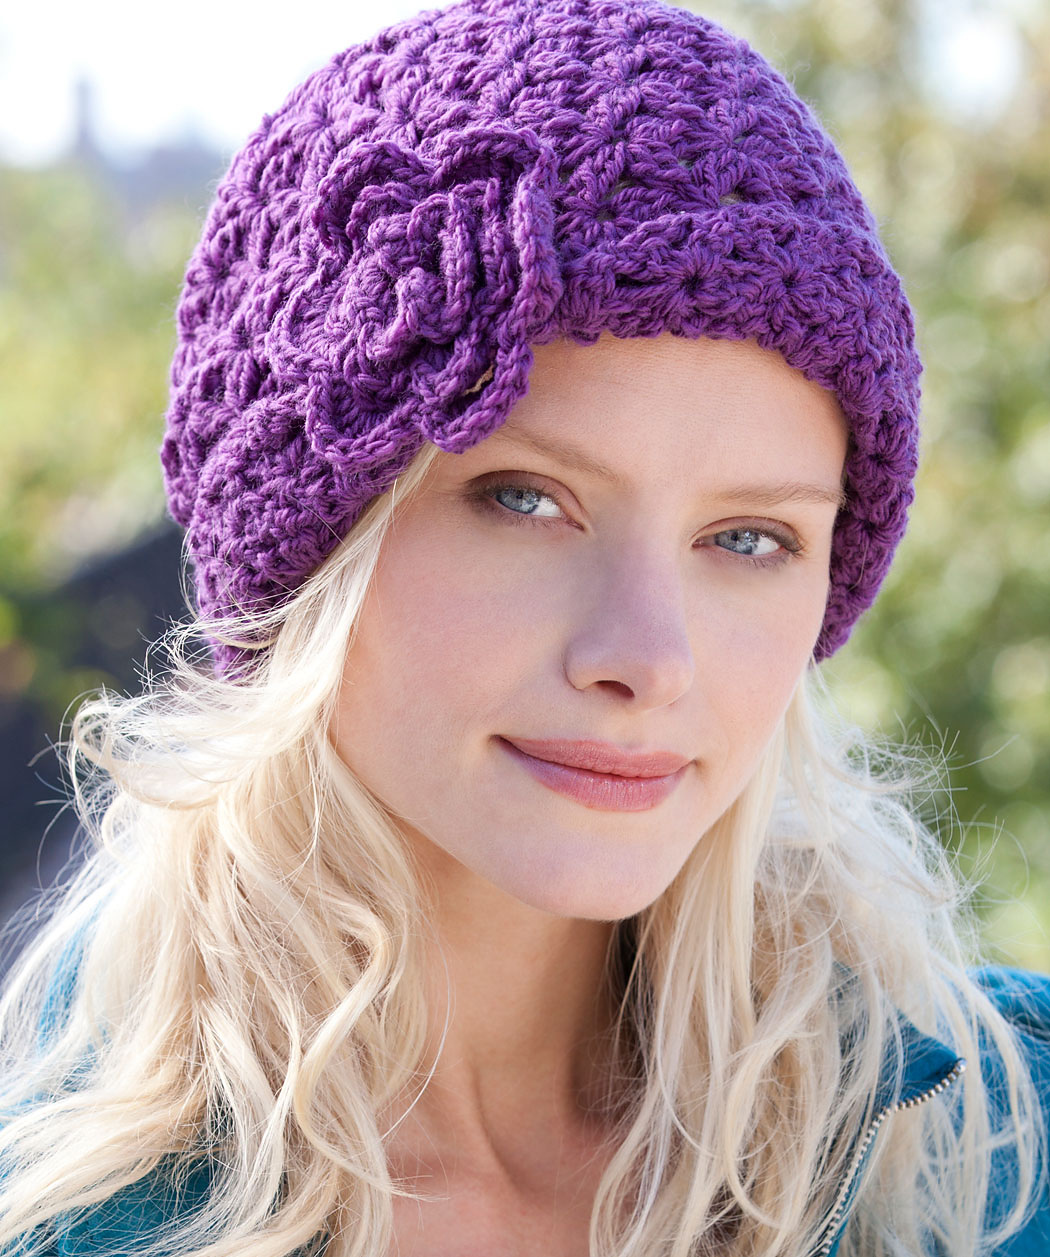 Crochet Hat With Flower On Side Pattern